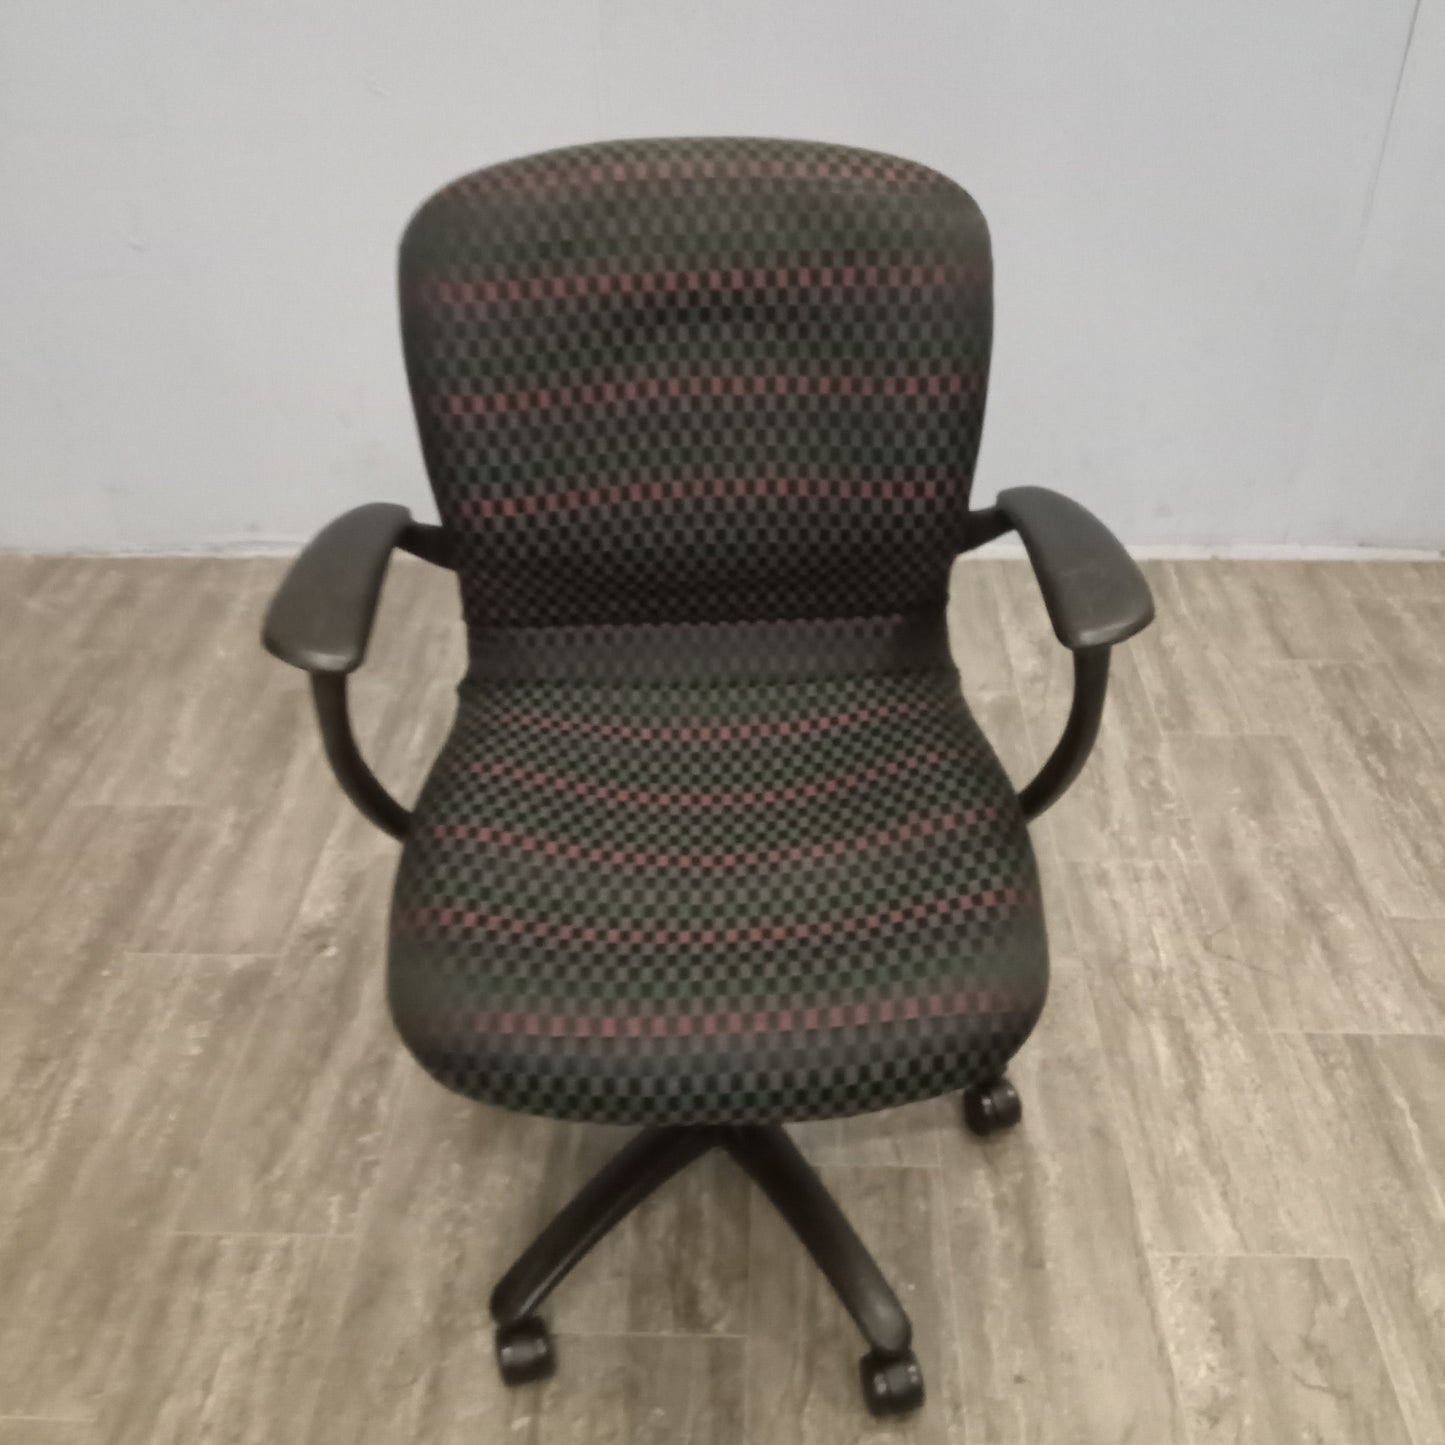 Desk Chair - Black Patterned